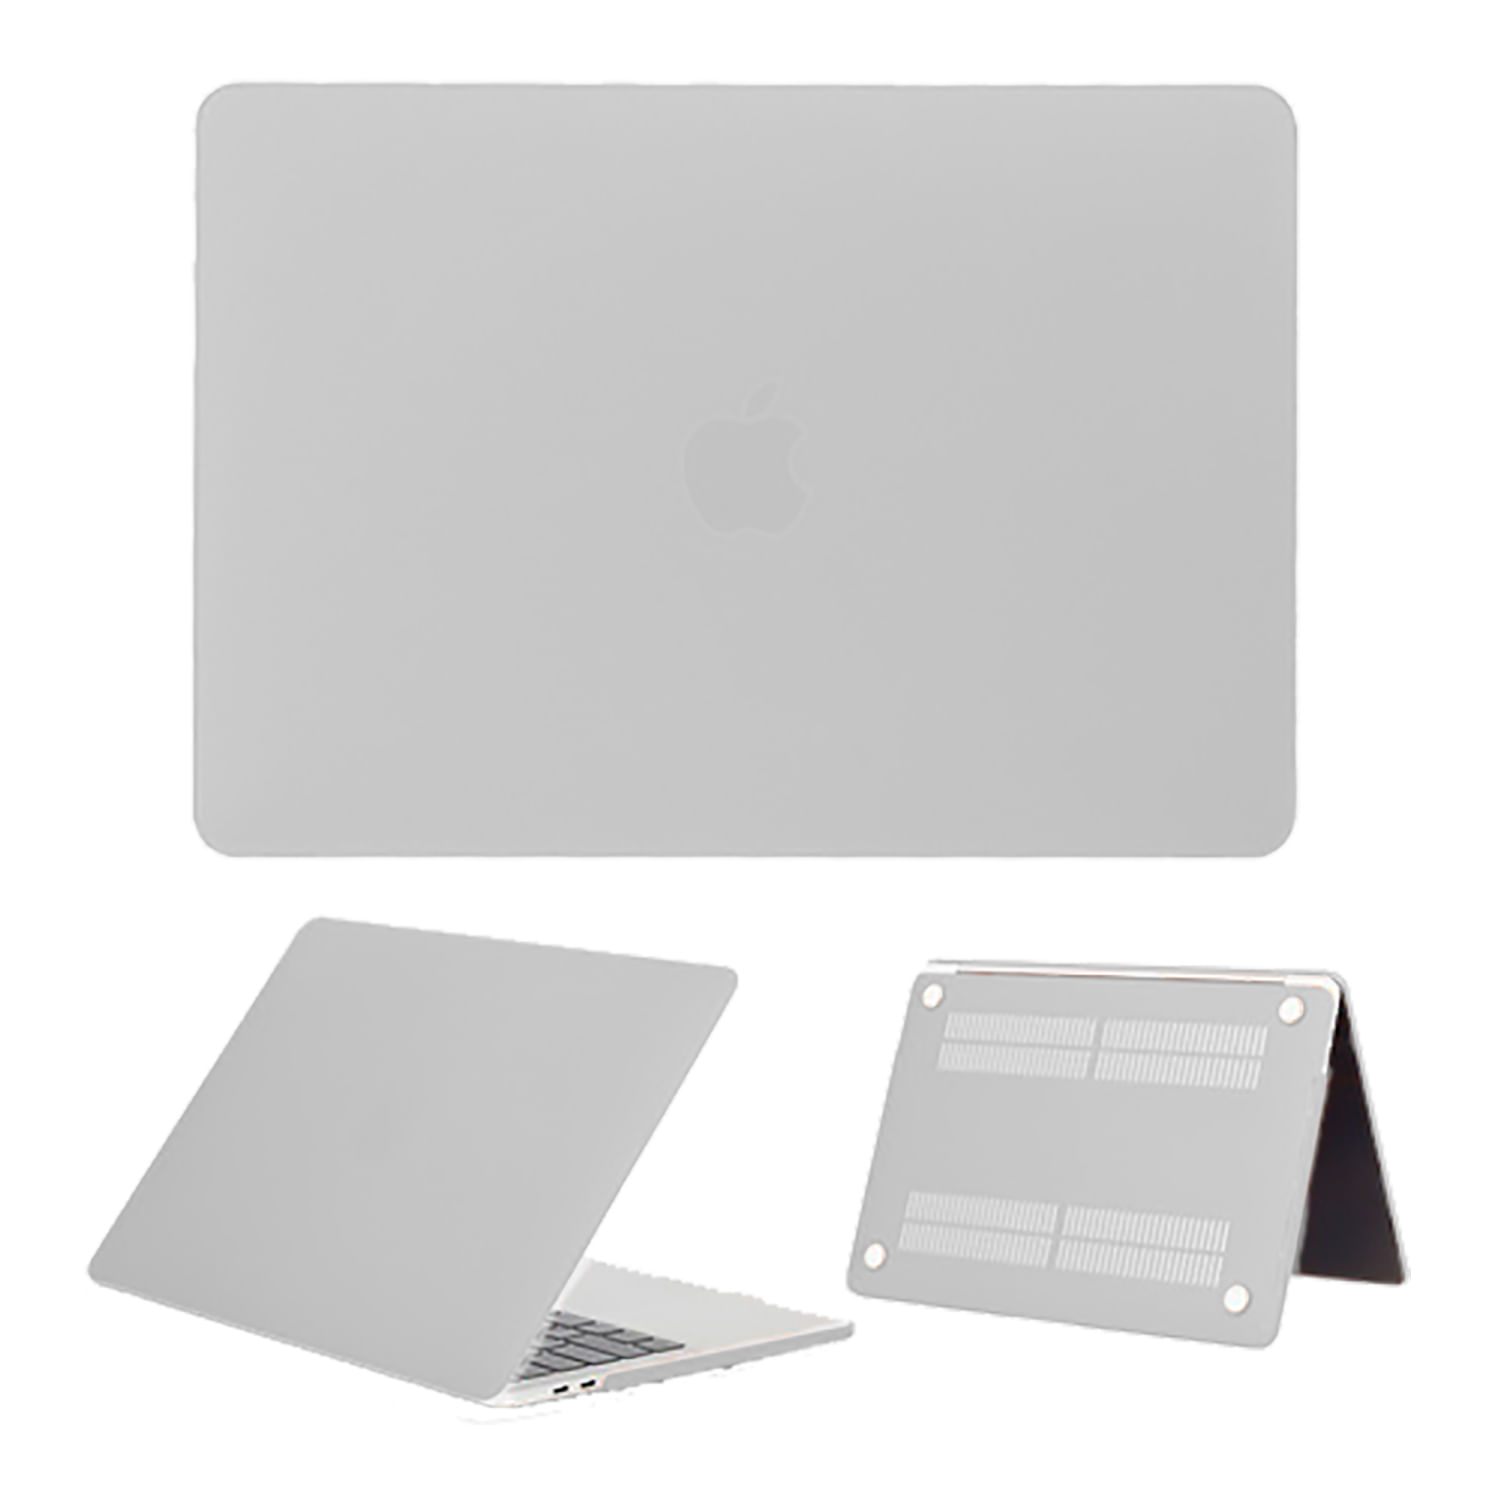 Case Mate Para Macbook Pro Retina 13" A1425 / A1502 Blanco